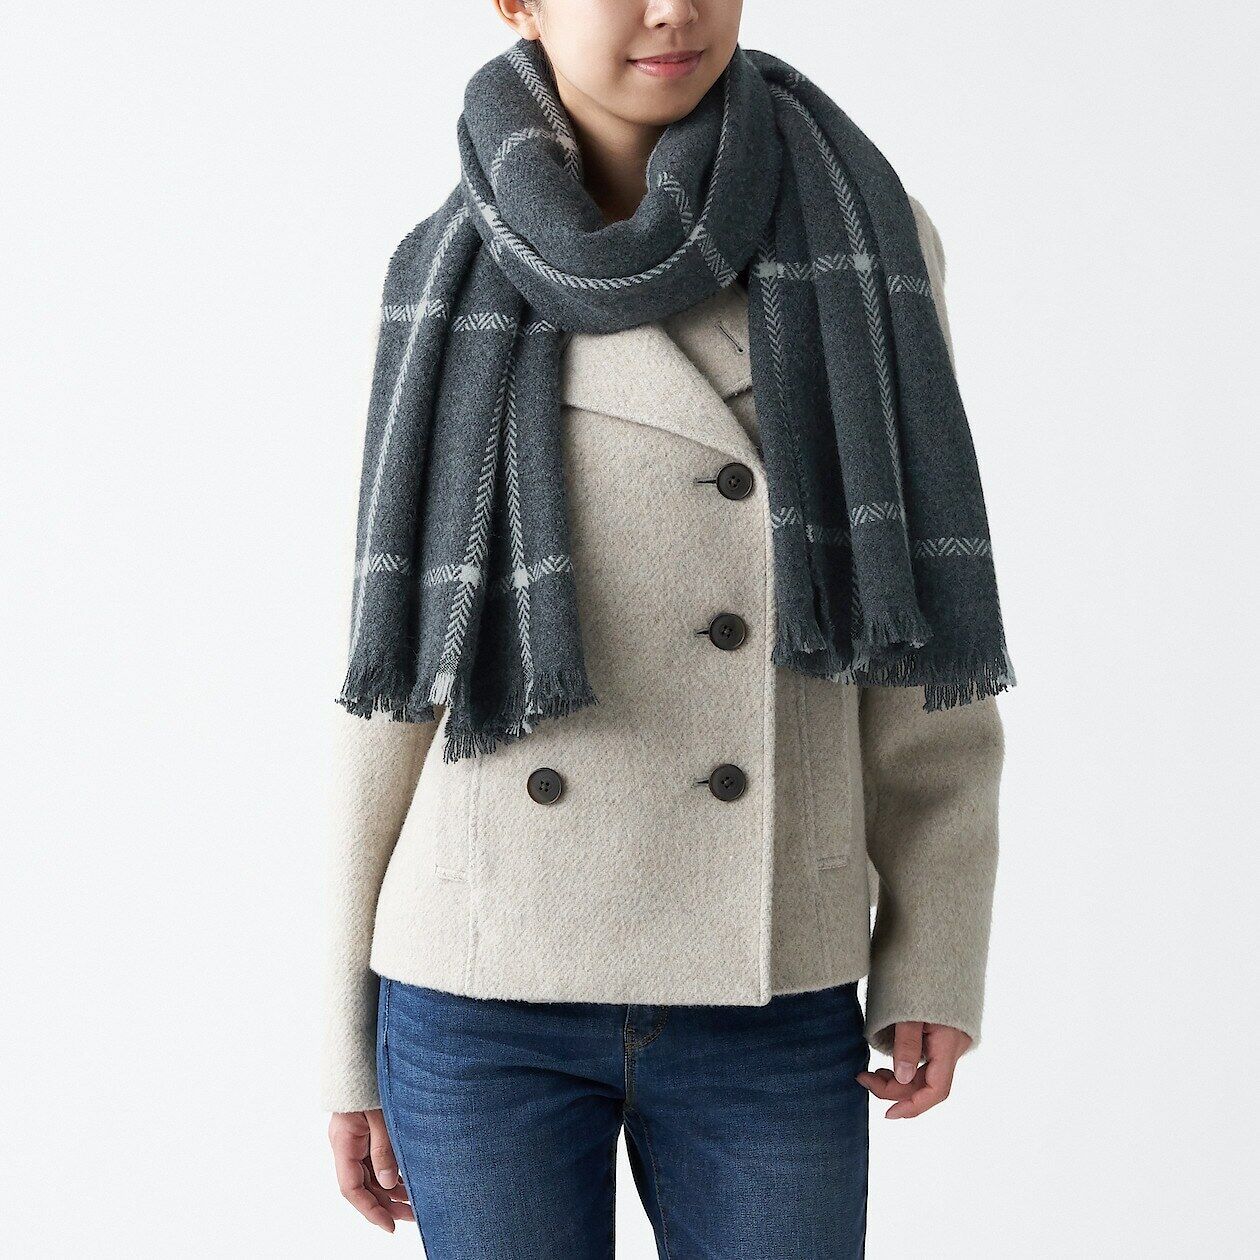 MUJI Wool pattern woven large-format stole 60 x 180 cm From japan | eBay